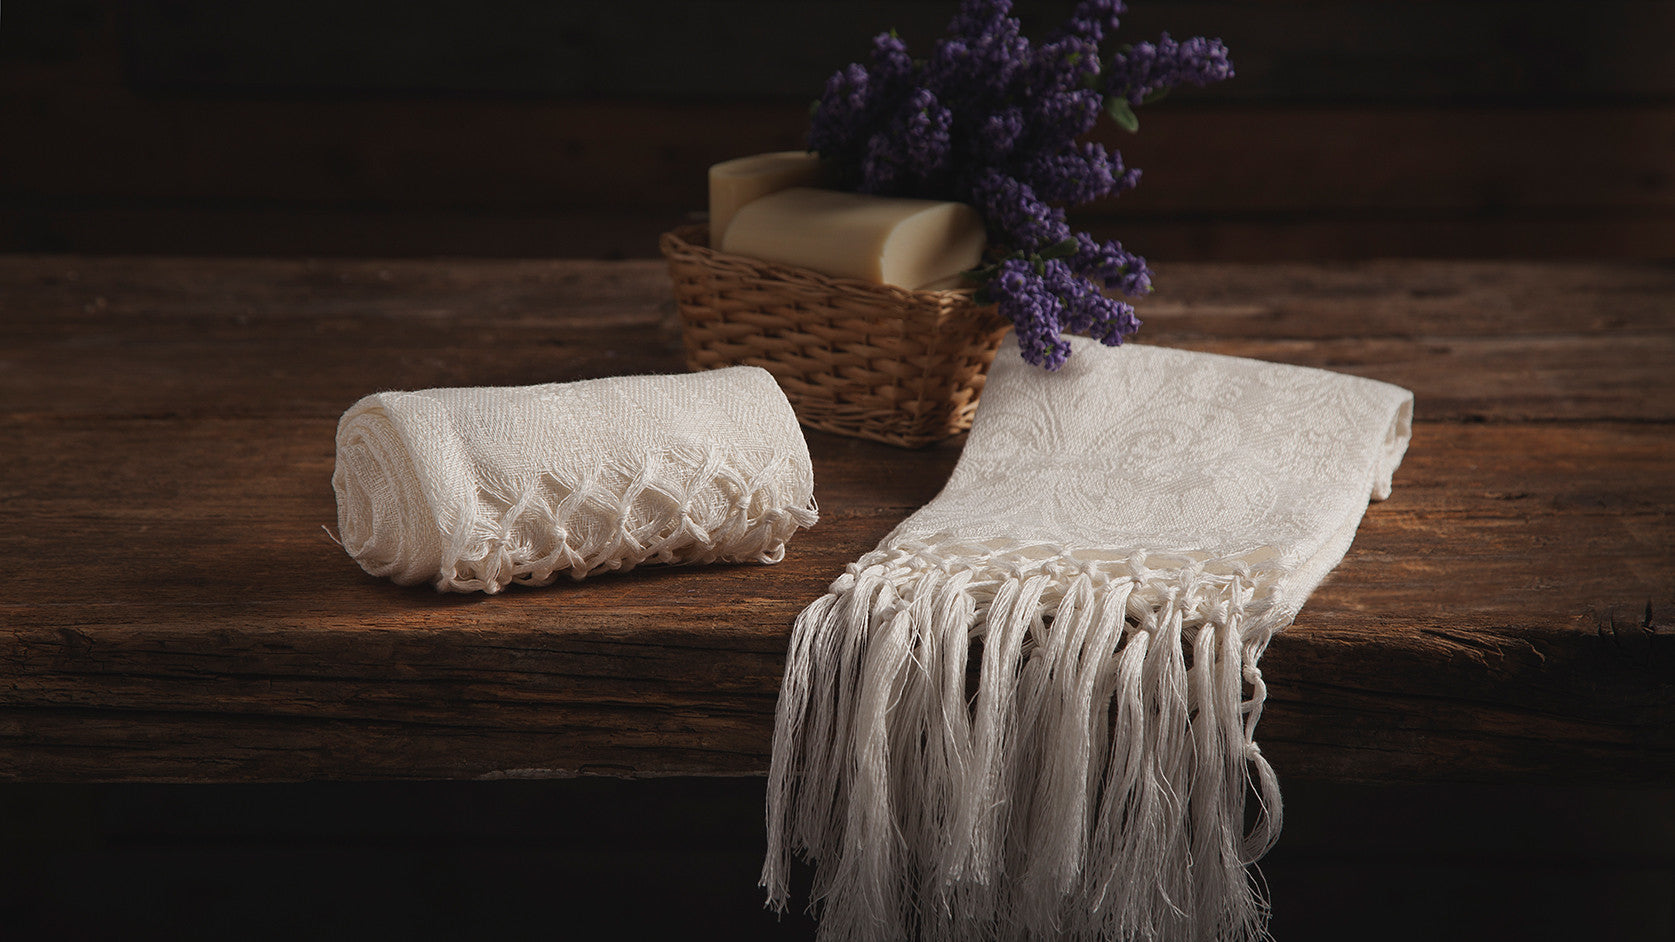 Busatti Zodiaco Linen Cotton Small Italian Hand Towel, Hand